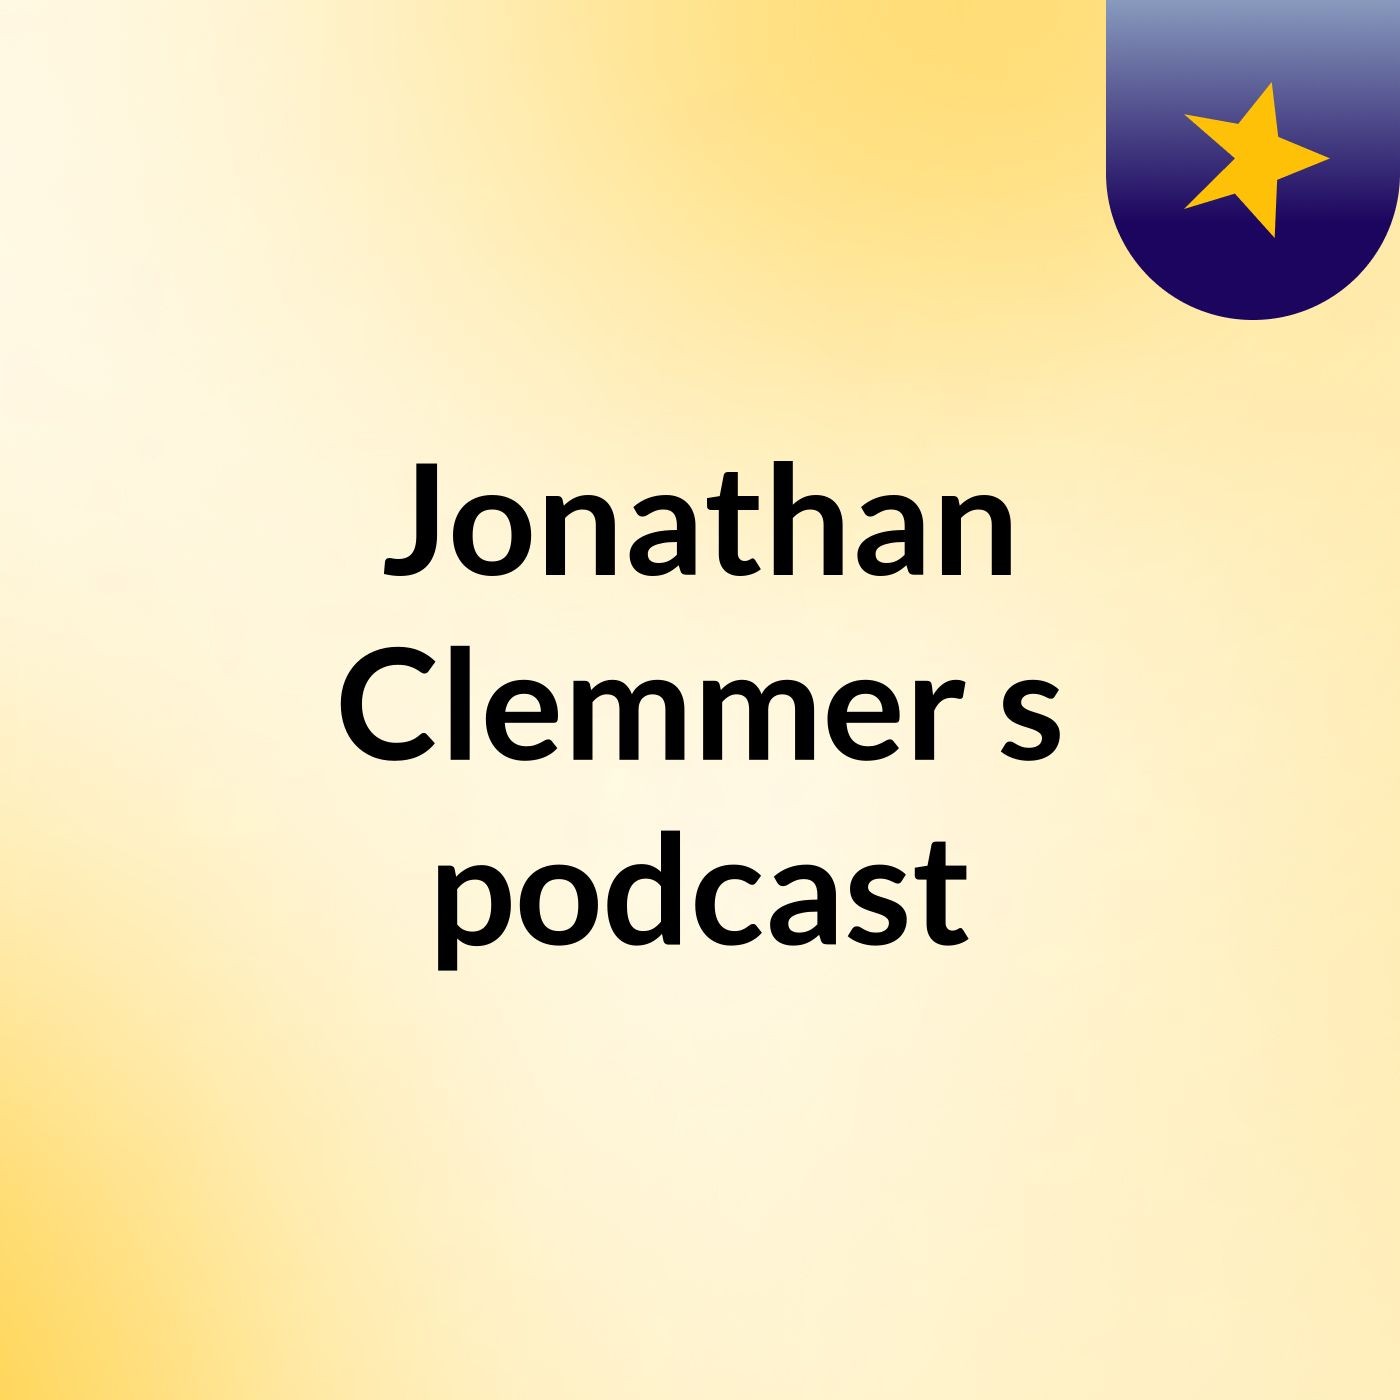 Jonathan Clemmer's podcast